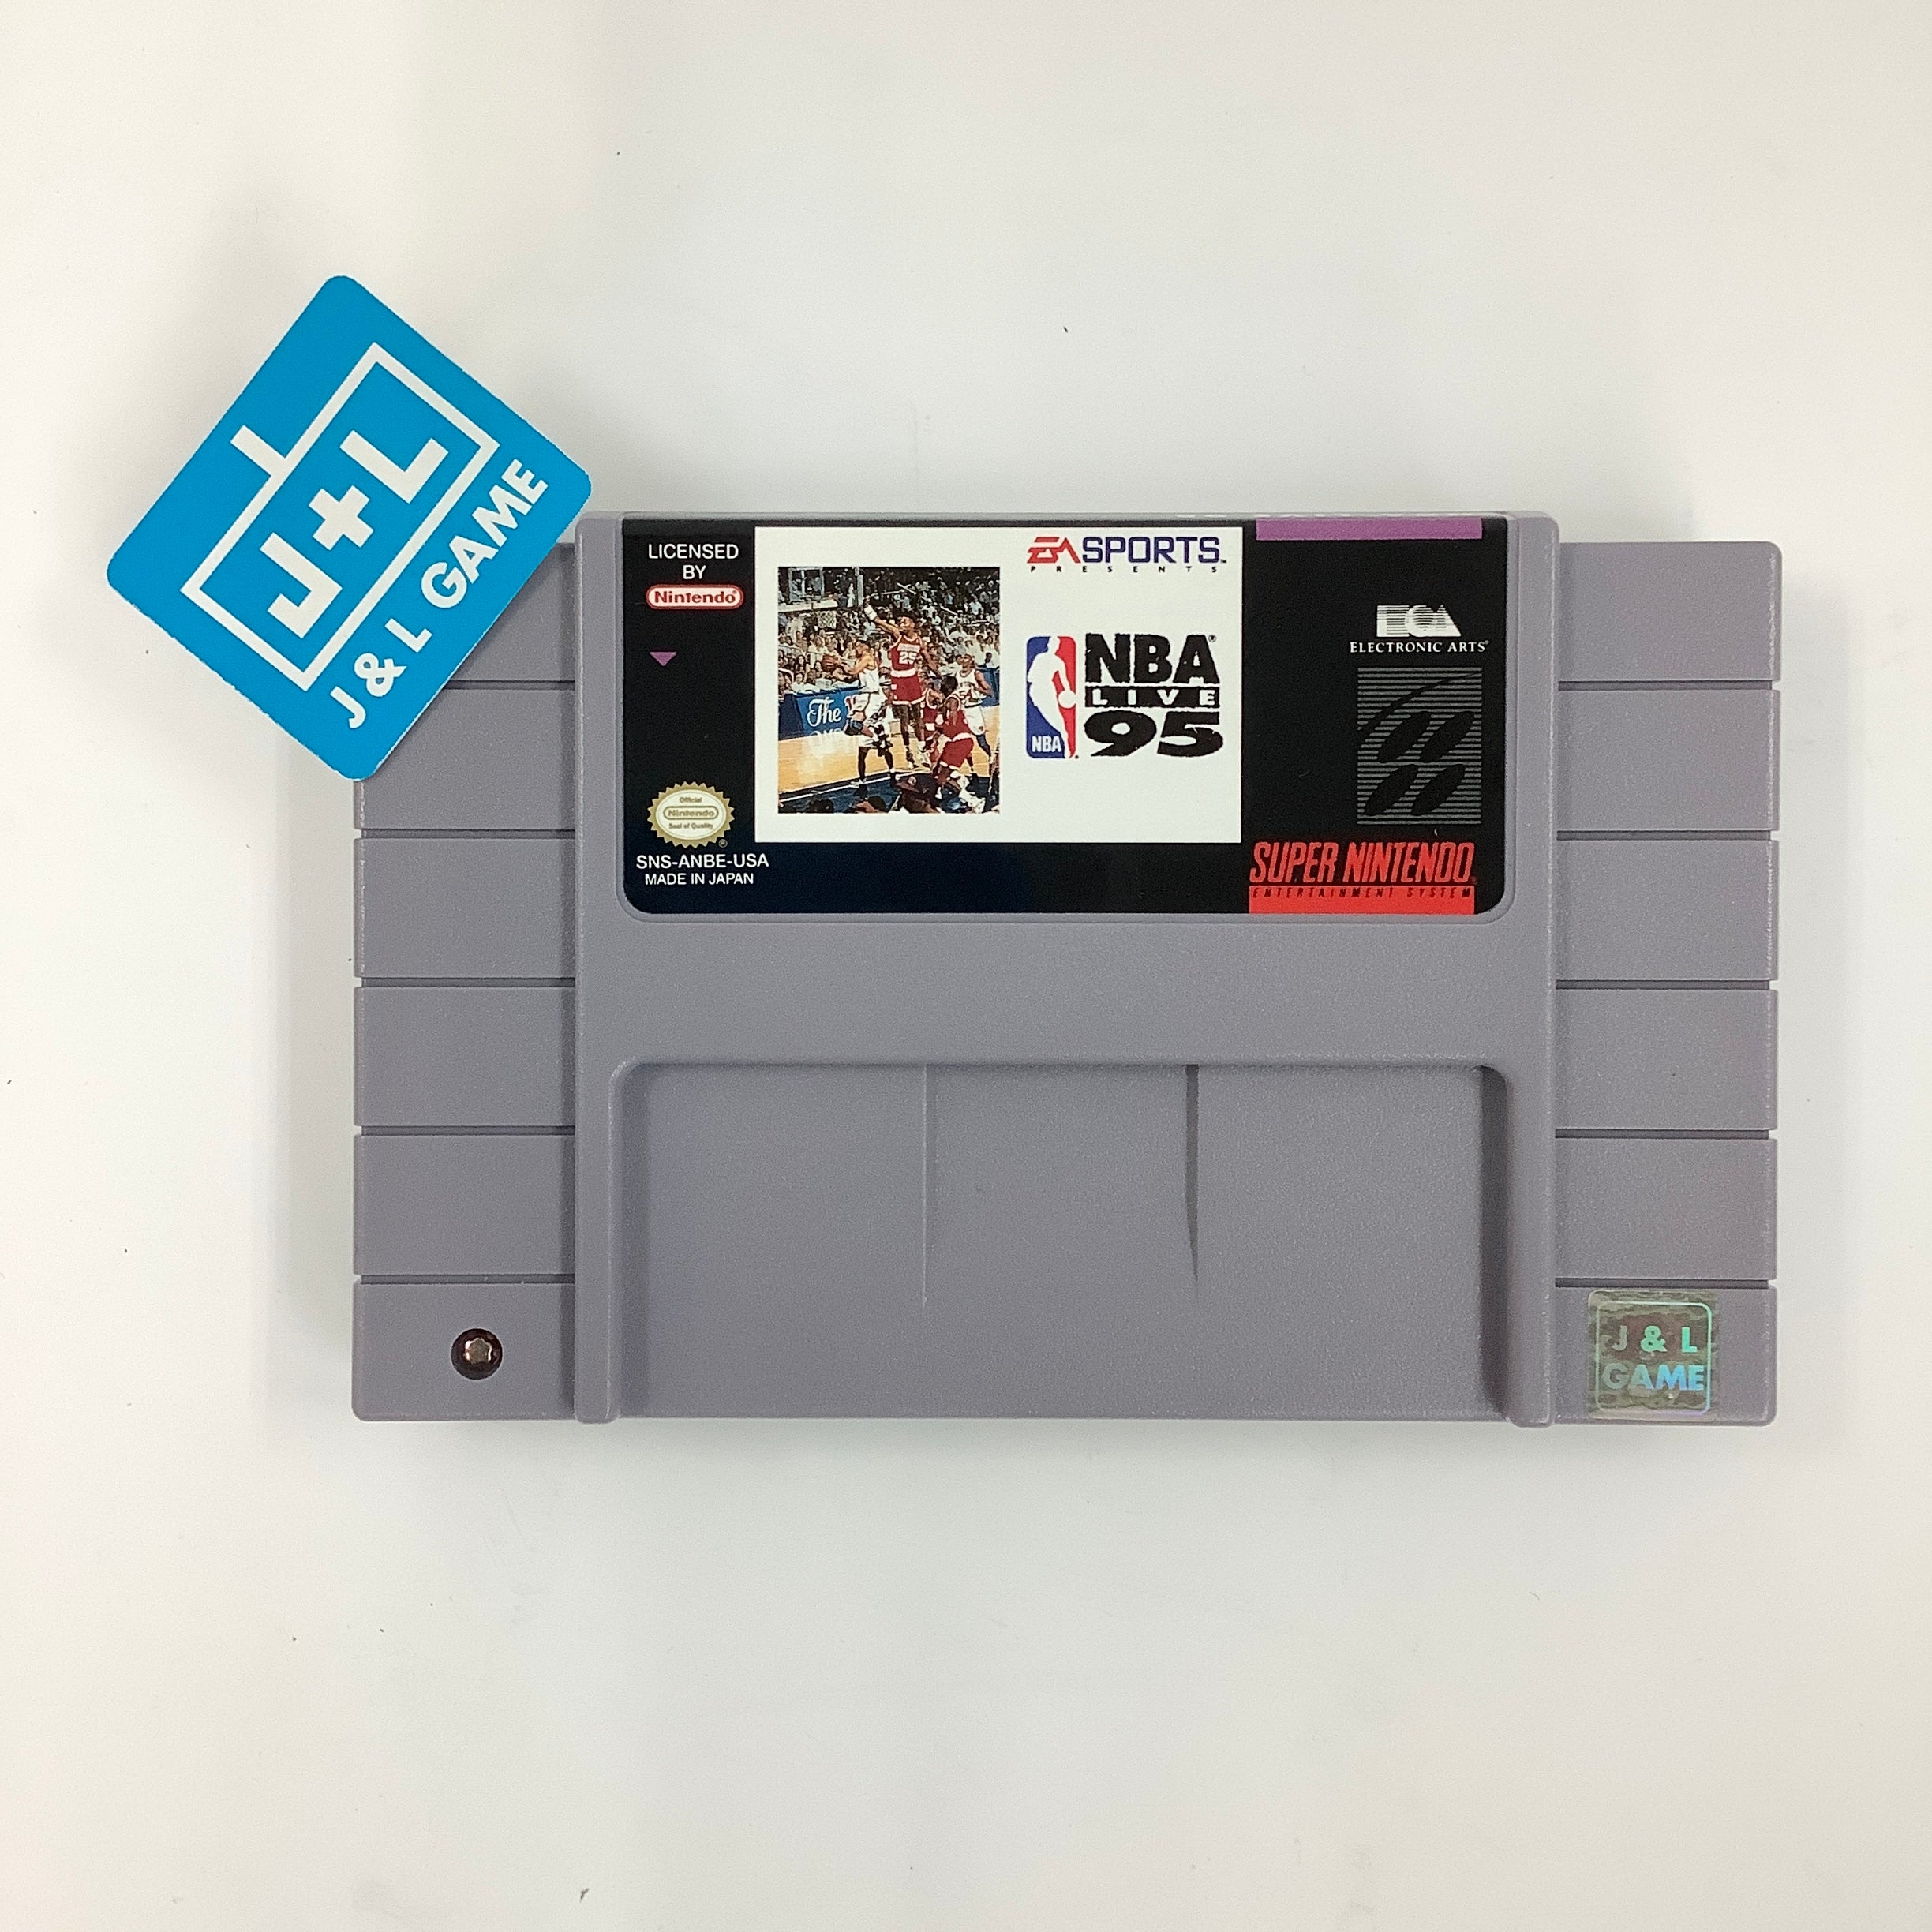 NBA Live 95 - (SNES) Super Nintendo [Pre-Owned] Video Games EA Sports   